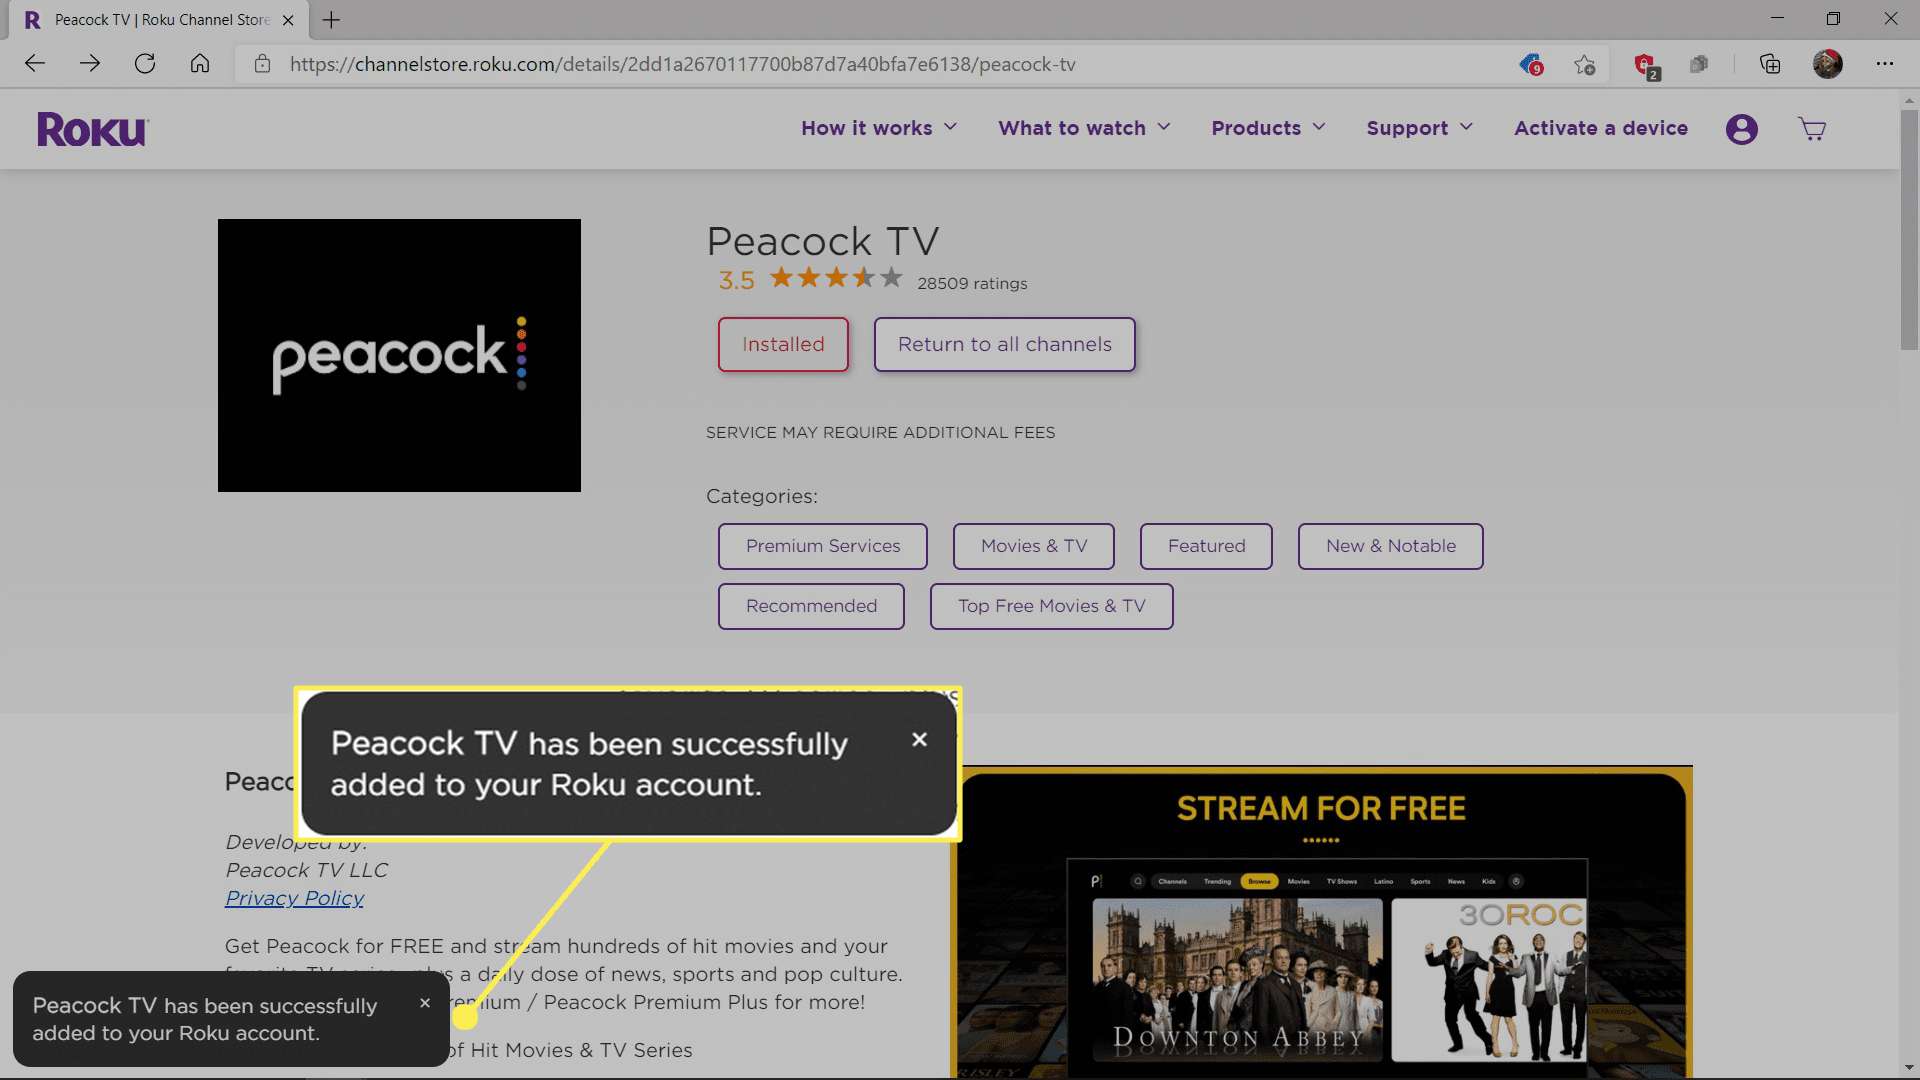 Peacock TV byla úspěšně přidána z Roku Channel Store.